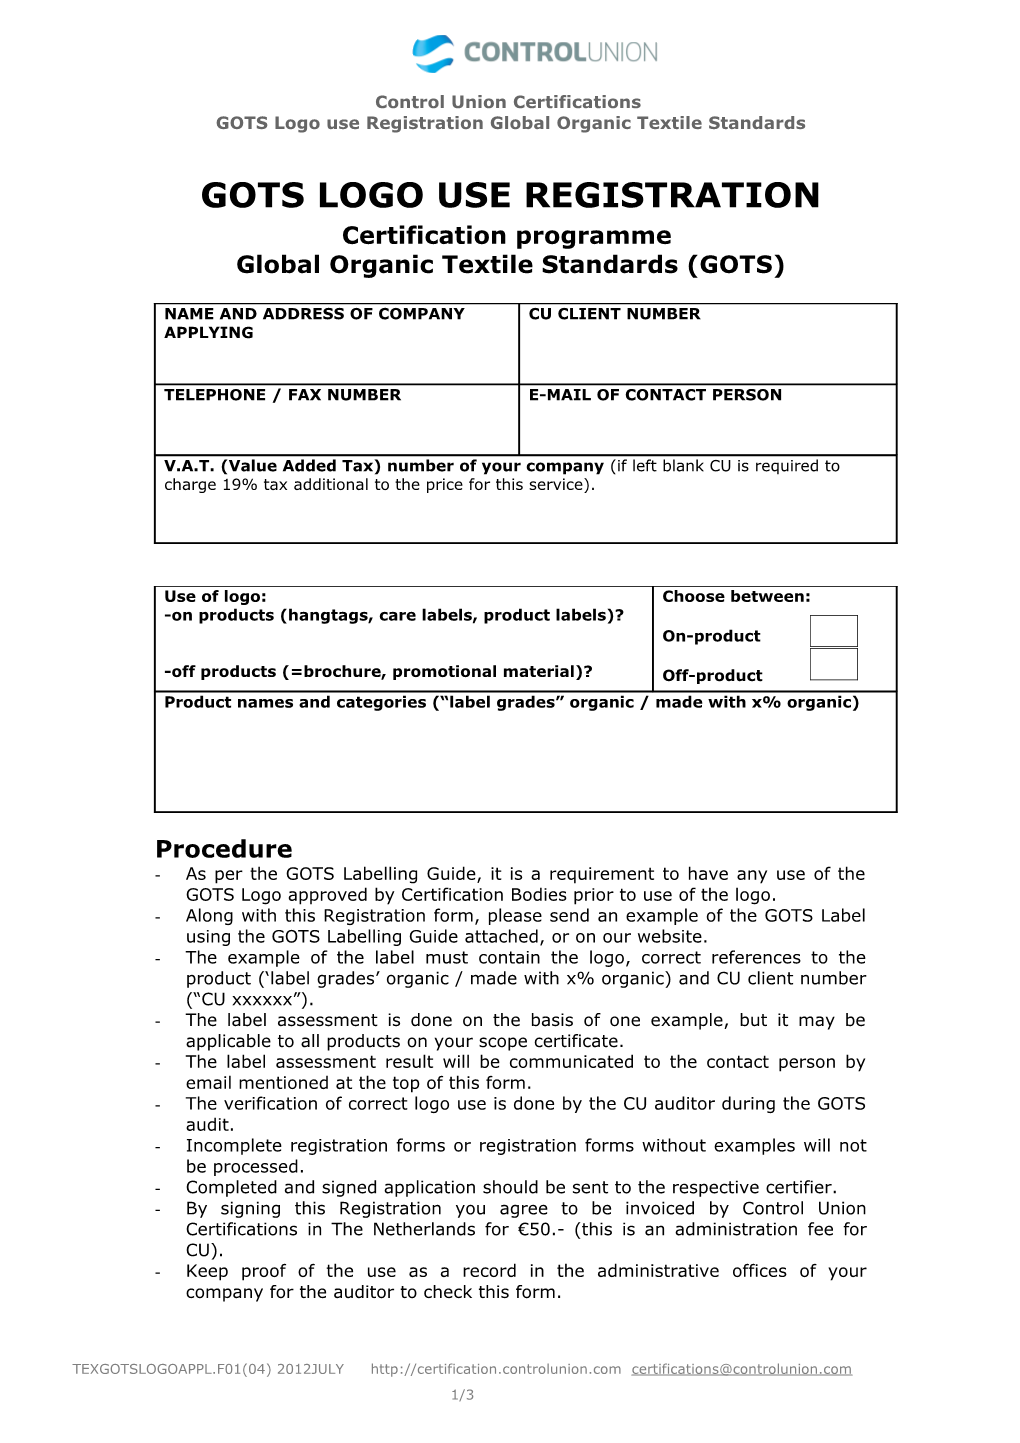 GOTS Logo Use Registration Global Organic Textile Standards